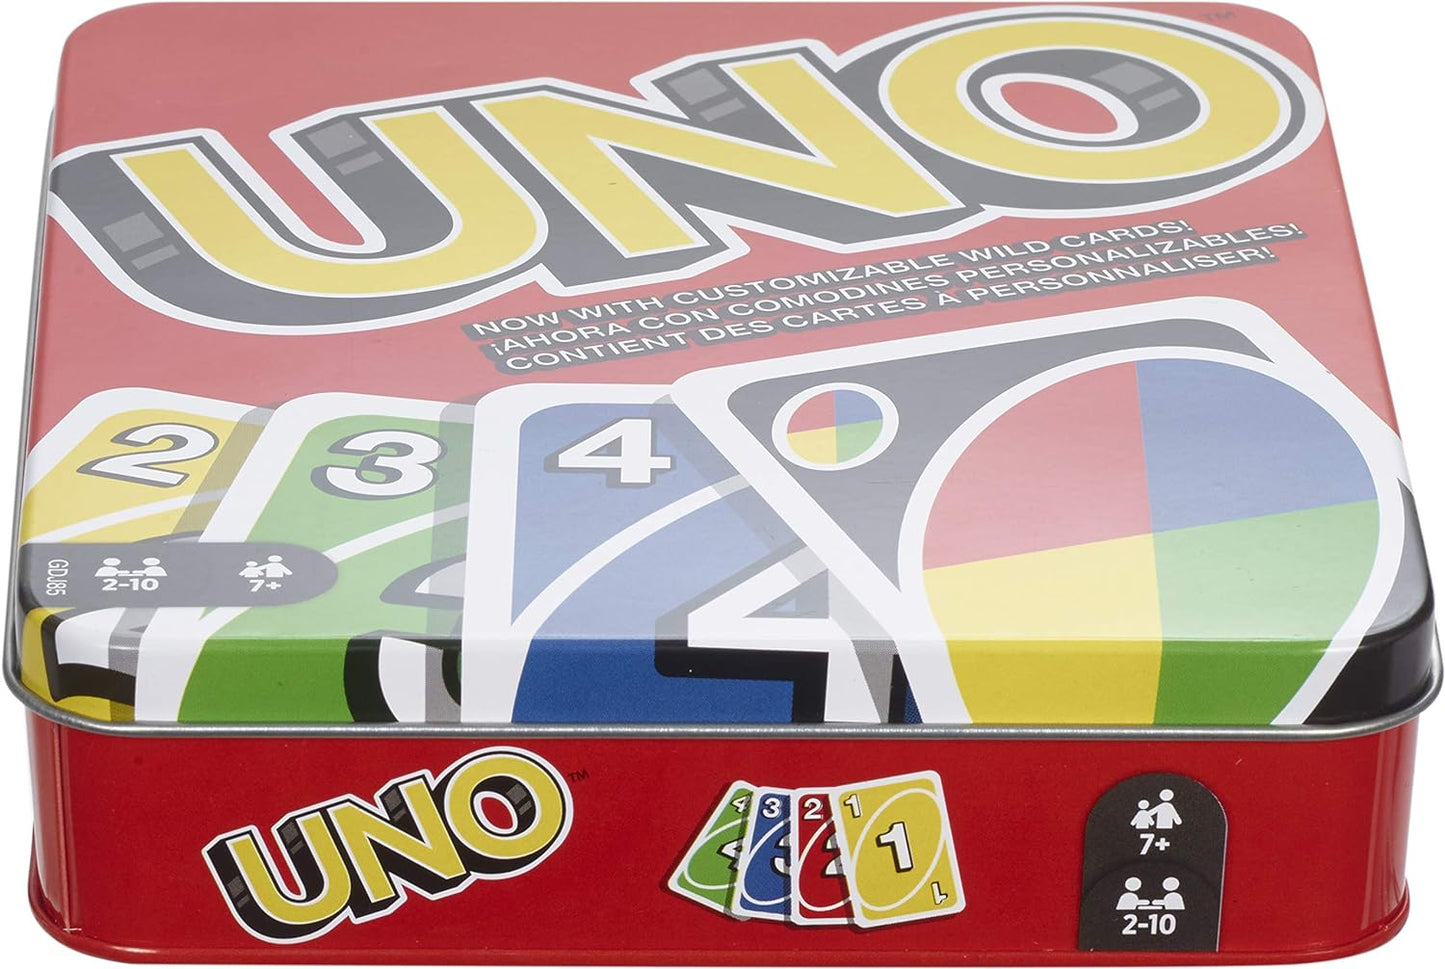 UNO Card Game in Storage Tin Box